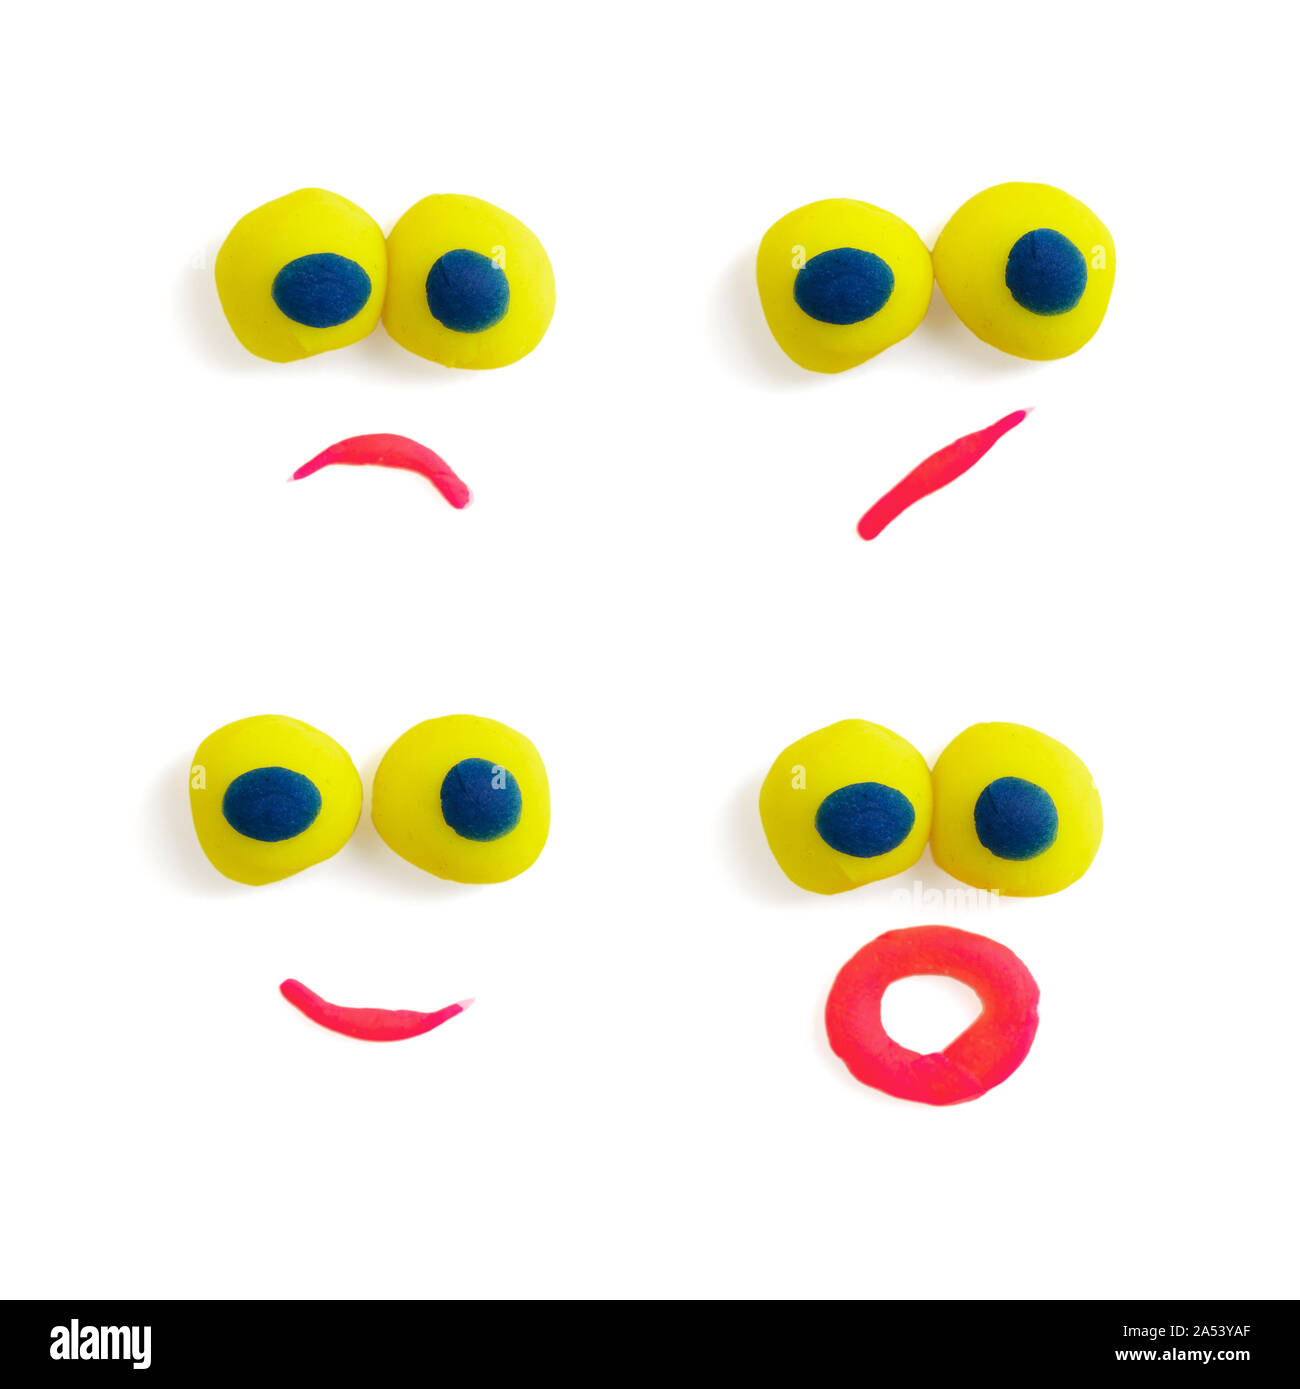 Cuatro funny faces - los ojos y la boca - hecha de plastilina multicolor con expresiones diferentes sobre el fondo blanco. Foto de stock